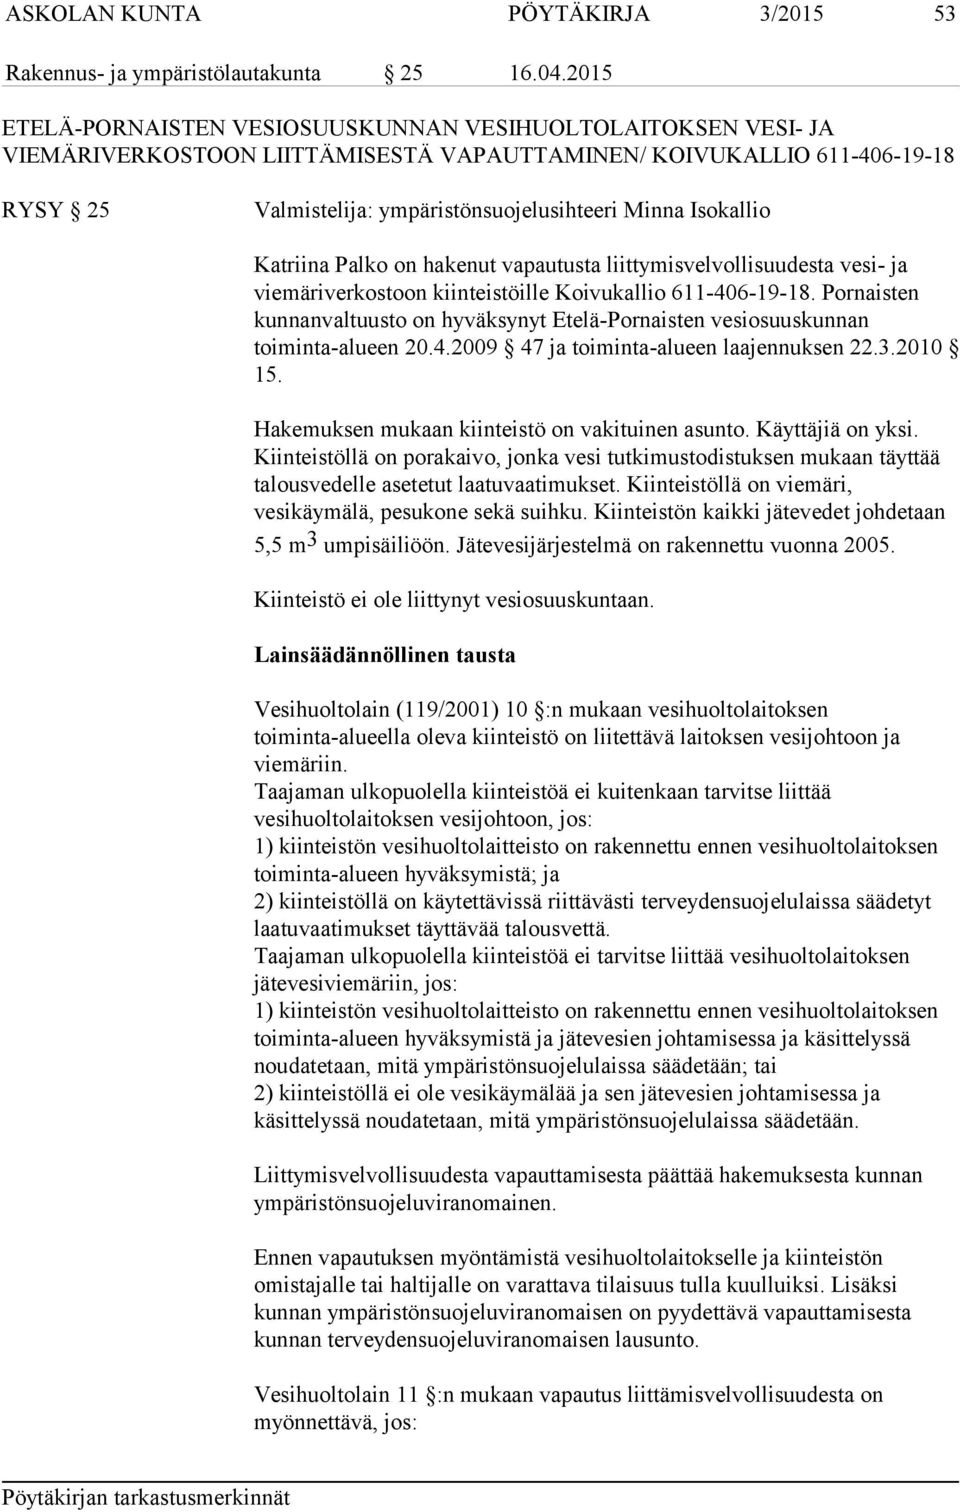 Isokallio Katriina Palko on hakenut vapautusta liittymisvelvollisuudesta vesi- ja viemäriverkostoon kiinteistöille Koivukallio 611-406-19-18.